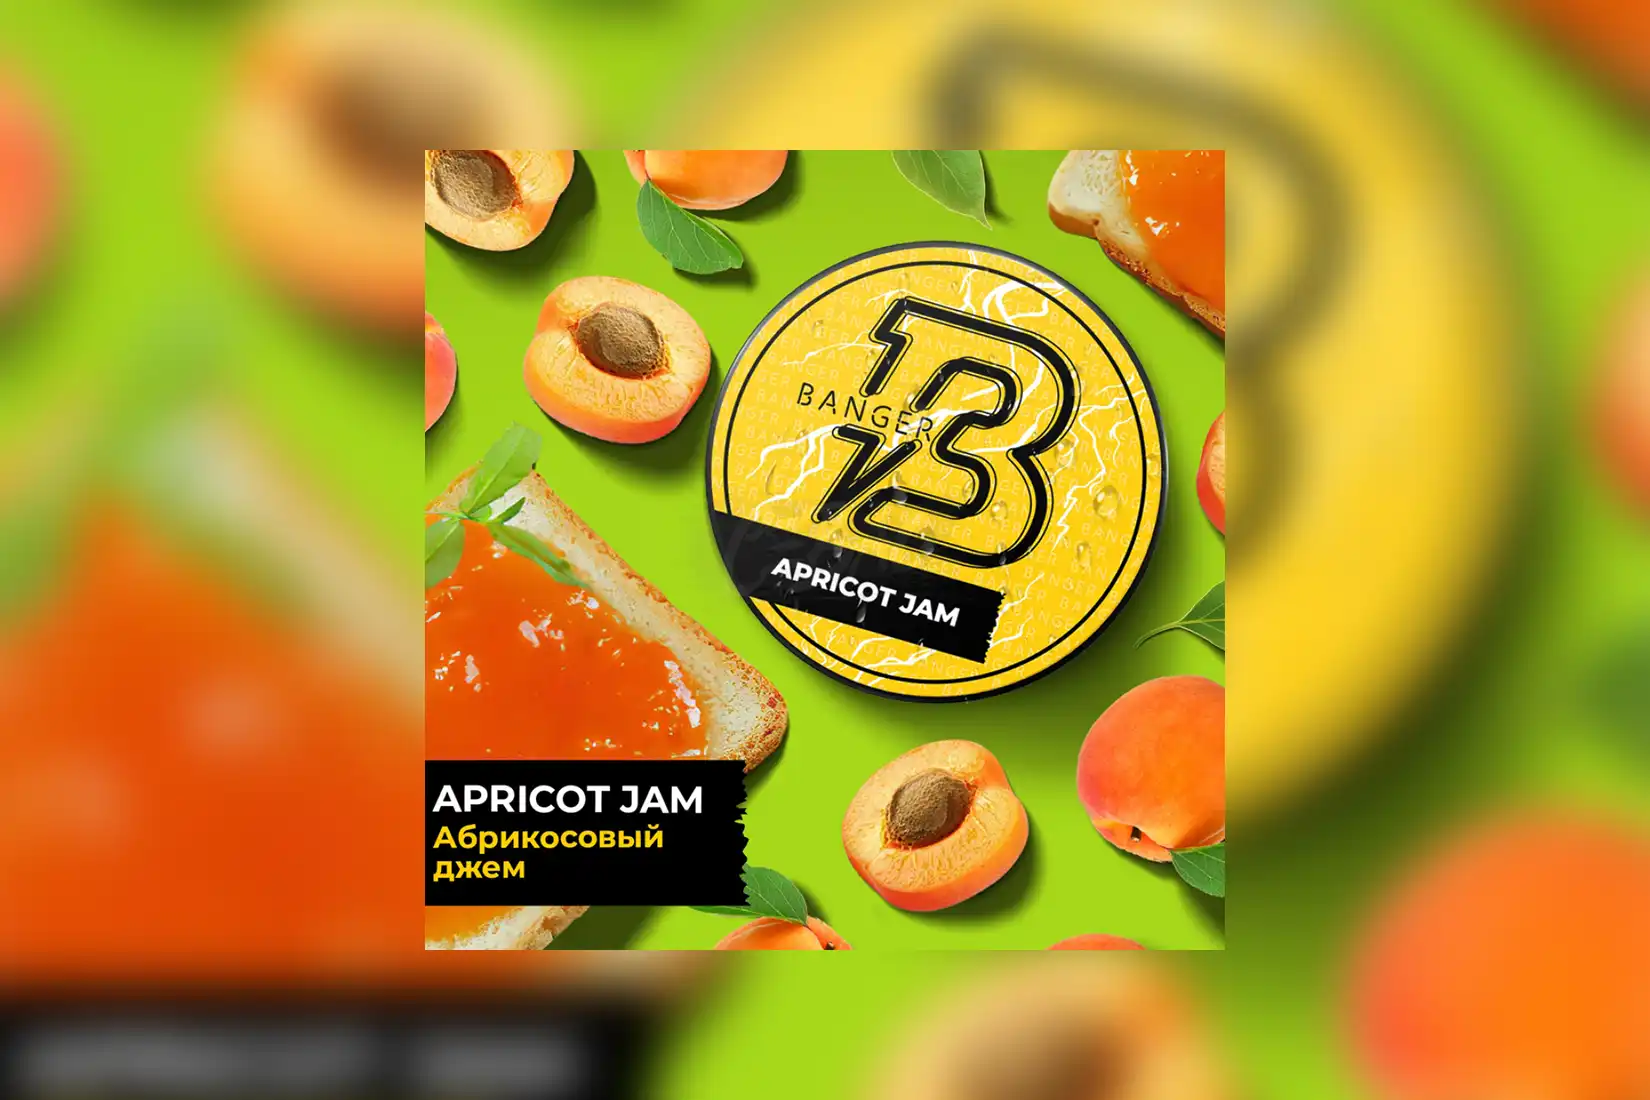 Табак для кальяна Banger Apricot Jam (Абрикосовый Джем) – описание, отзывы